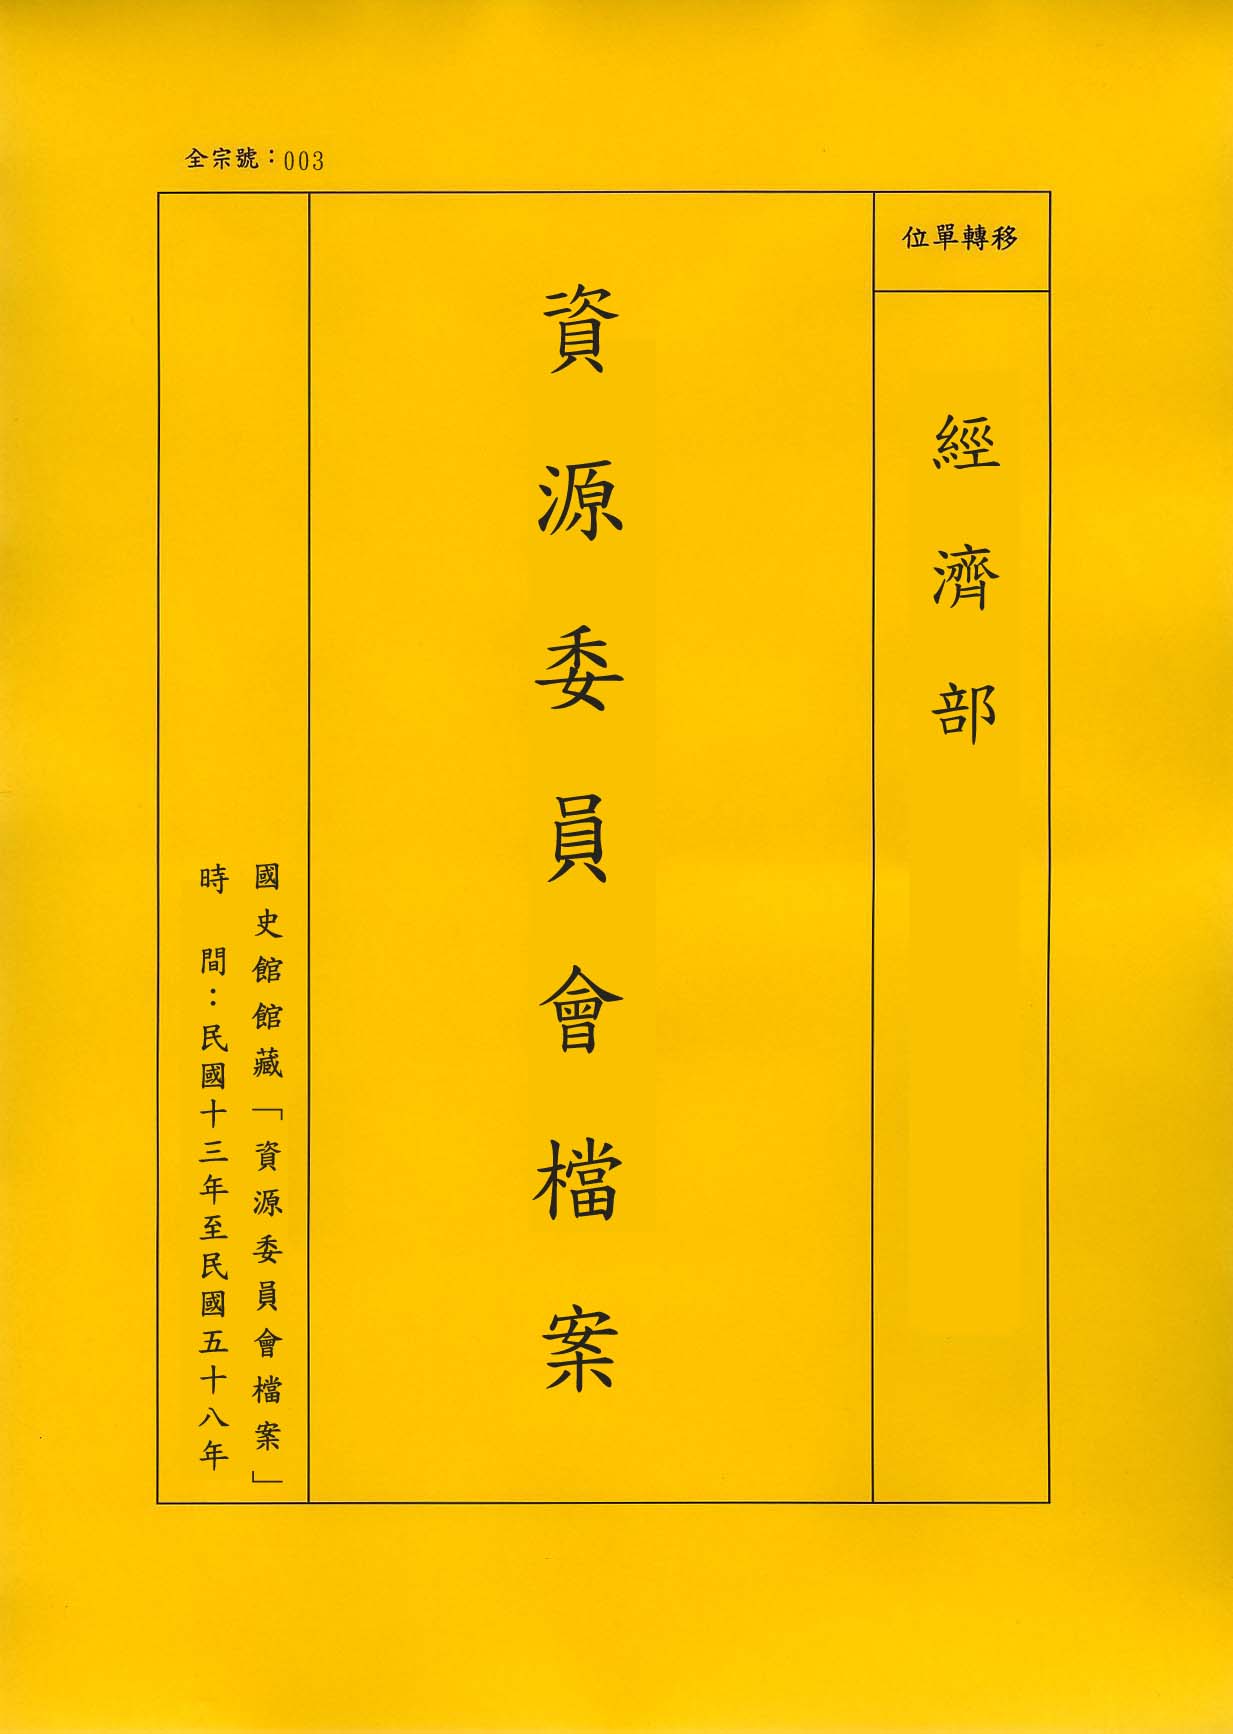 卷名:染織業工廠調查表—上海(二)(003-010306-0437)